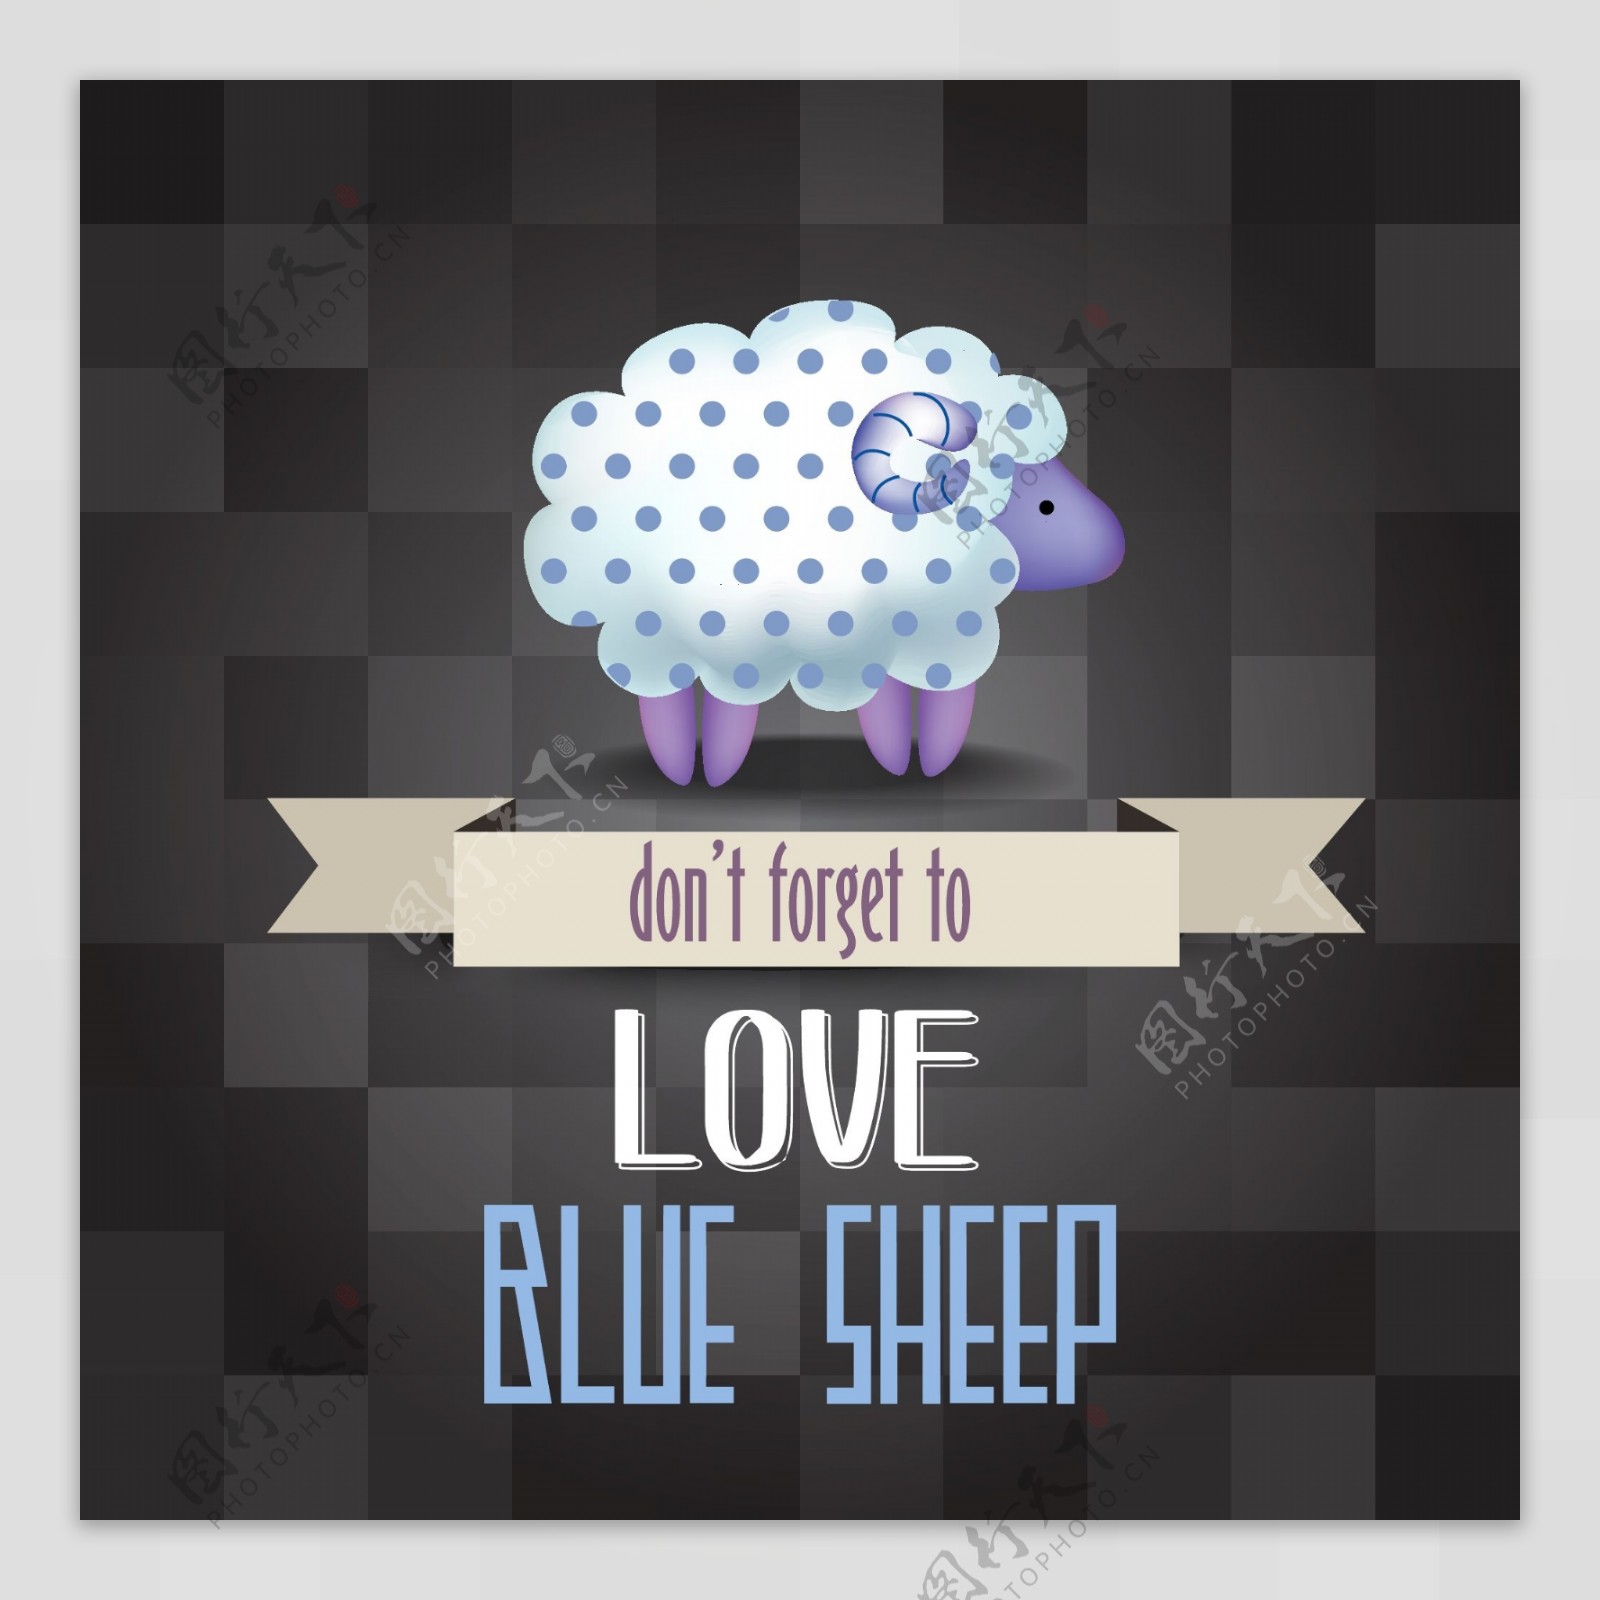 别忘了爱蓝羊